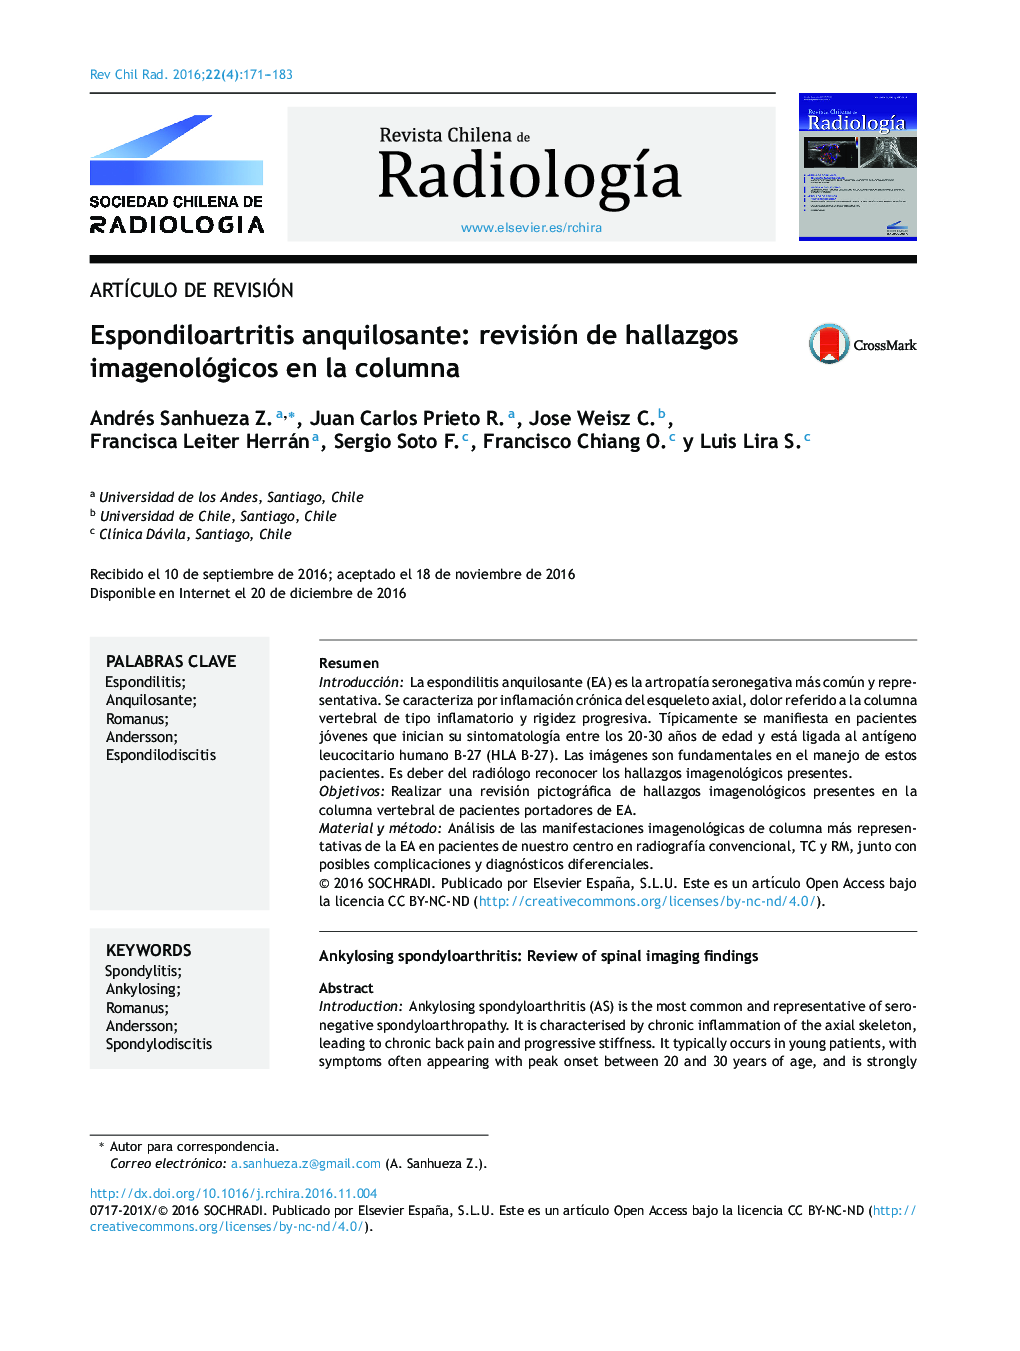 Espondiloartritis anquilosante: revisión de hallazgos imagenológicos en la columna